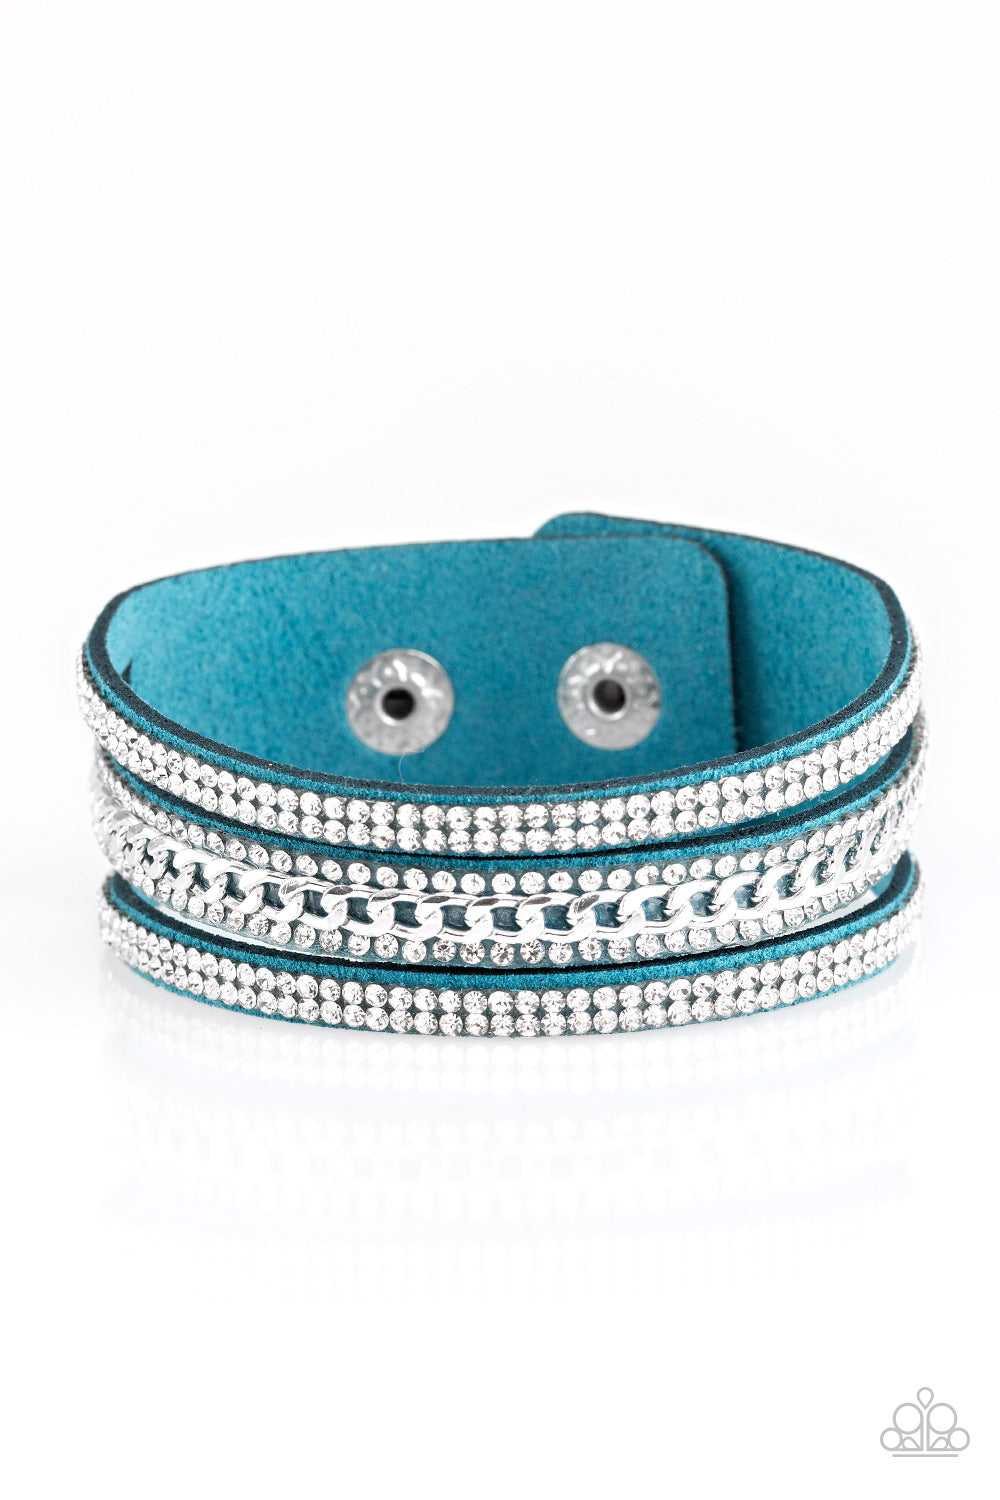 Rollin In Rhinestones - Blue wrap bracelet